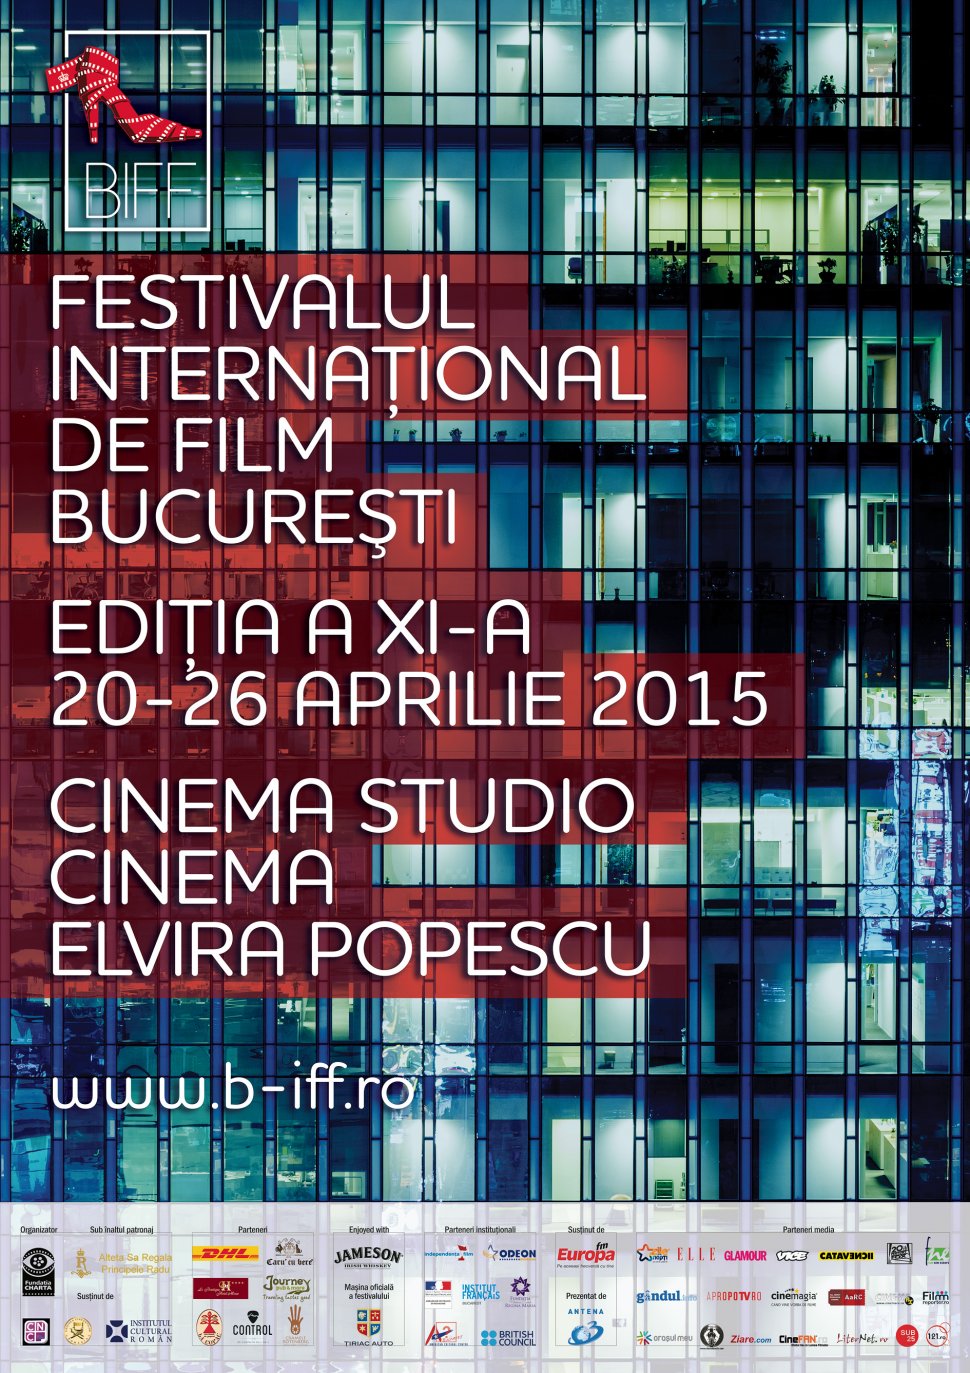 Şase filme în competiţia Festivalului Internaţional de Film Bucureşti 2015